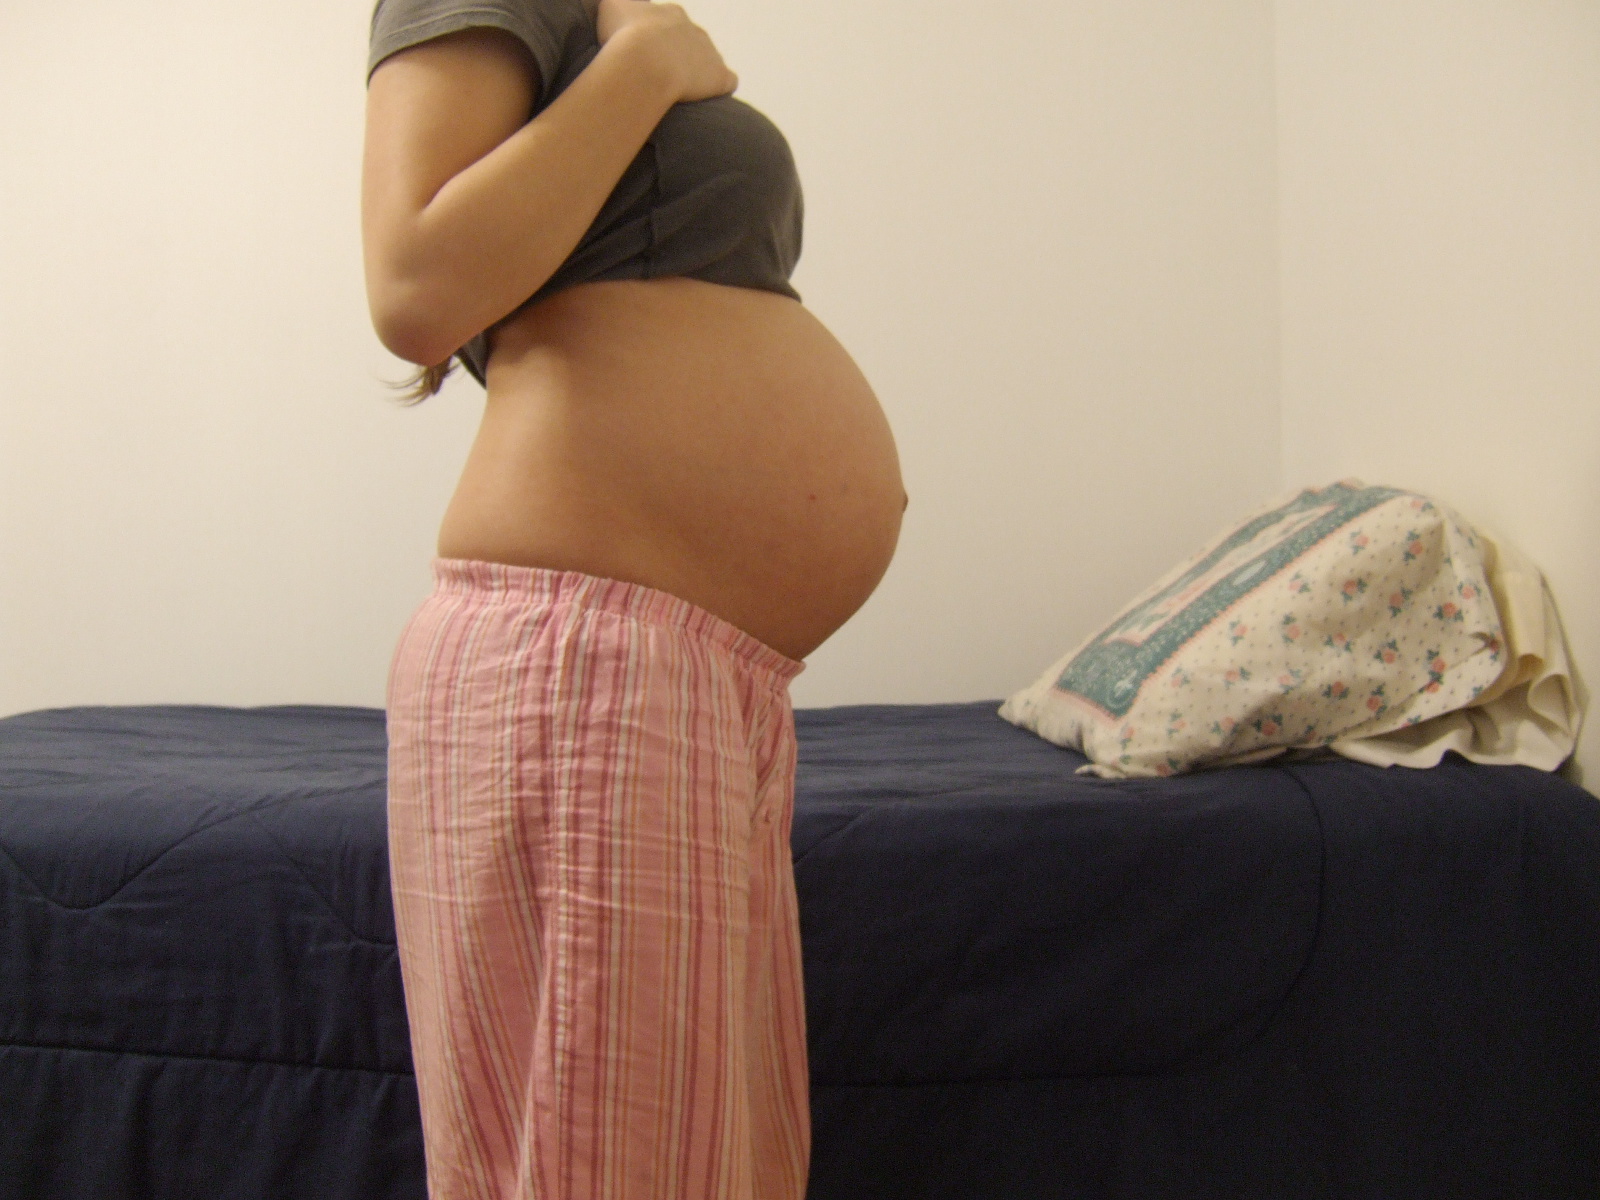 Шла 32 неделя беременности. Живот на 32 неделе беременности. Животик на 32 неделе беременности. 3͓2͓н͓е͓д͓е͓л͓и͓ б͓е͓р͓е͓м͓. Беременные девушки.